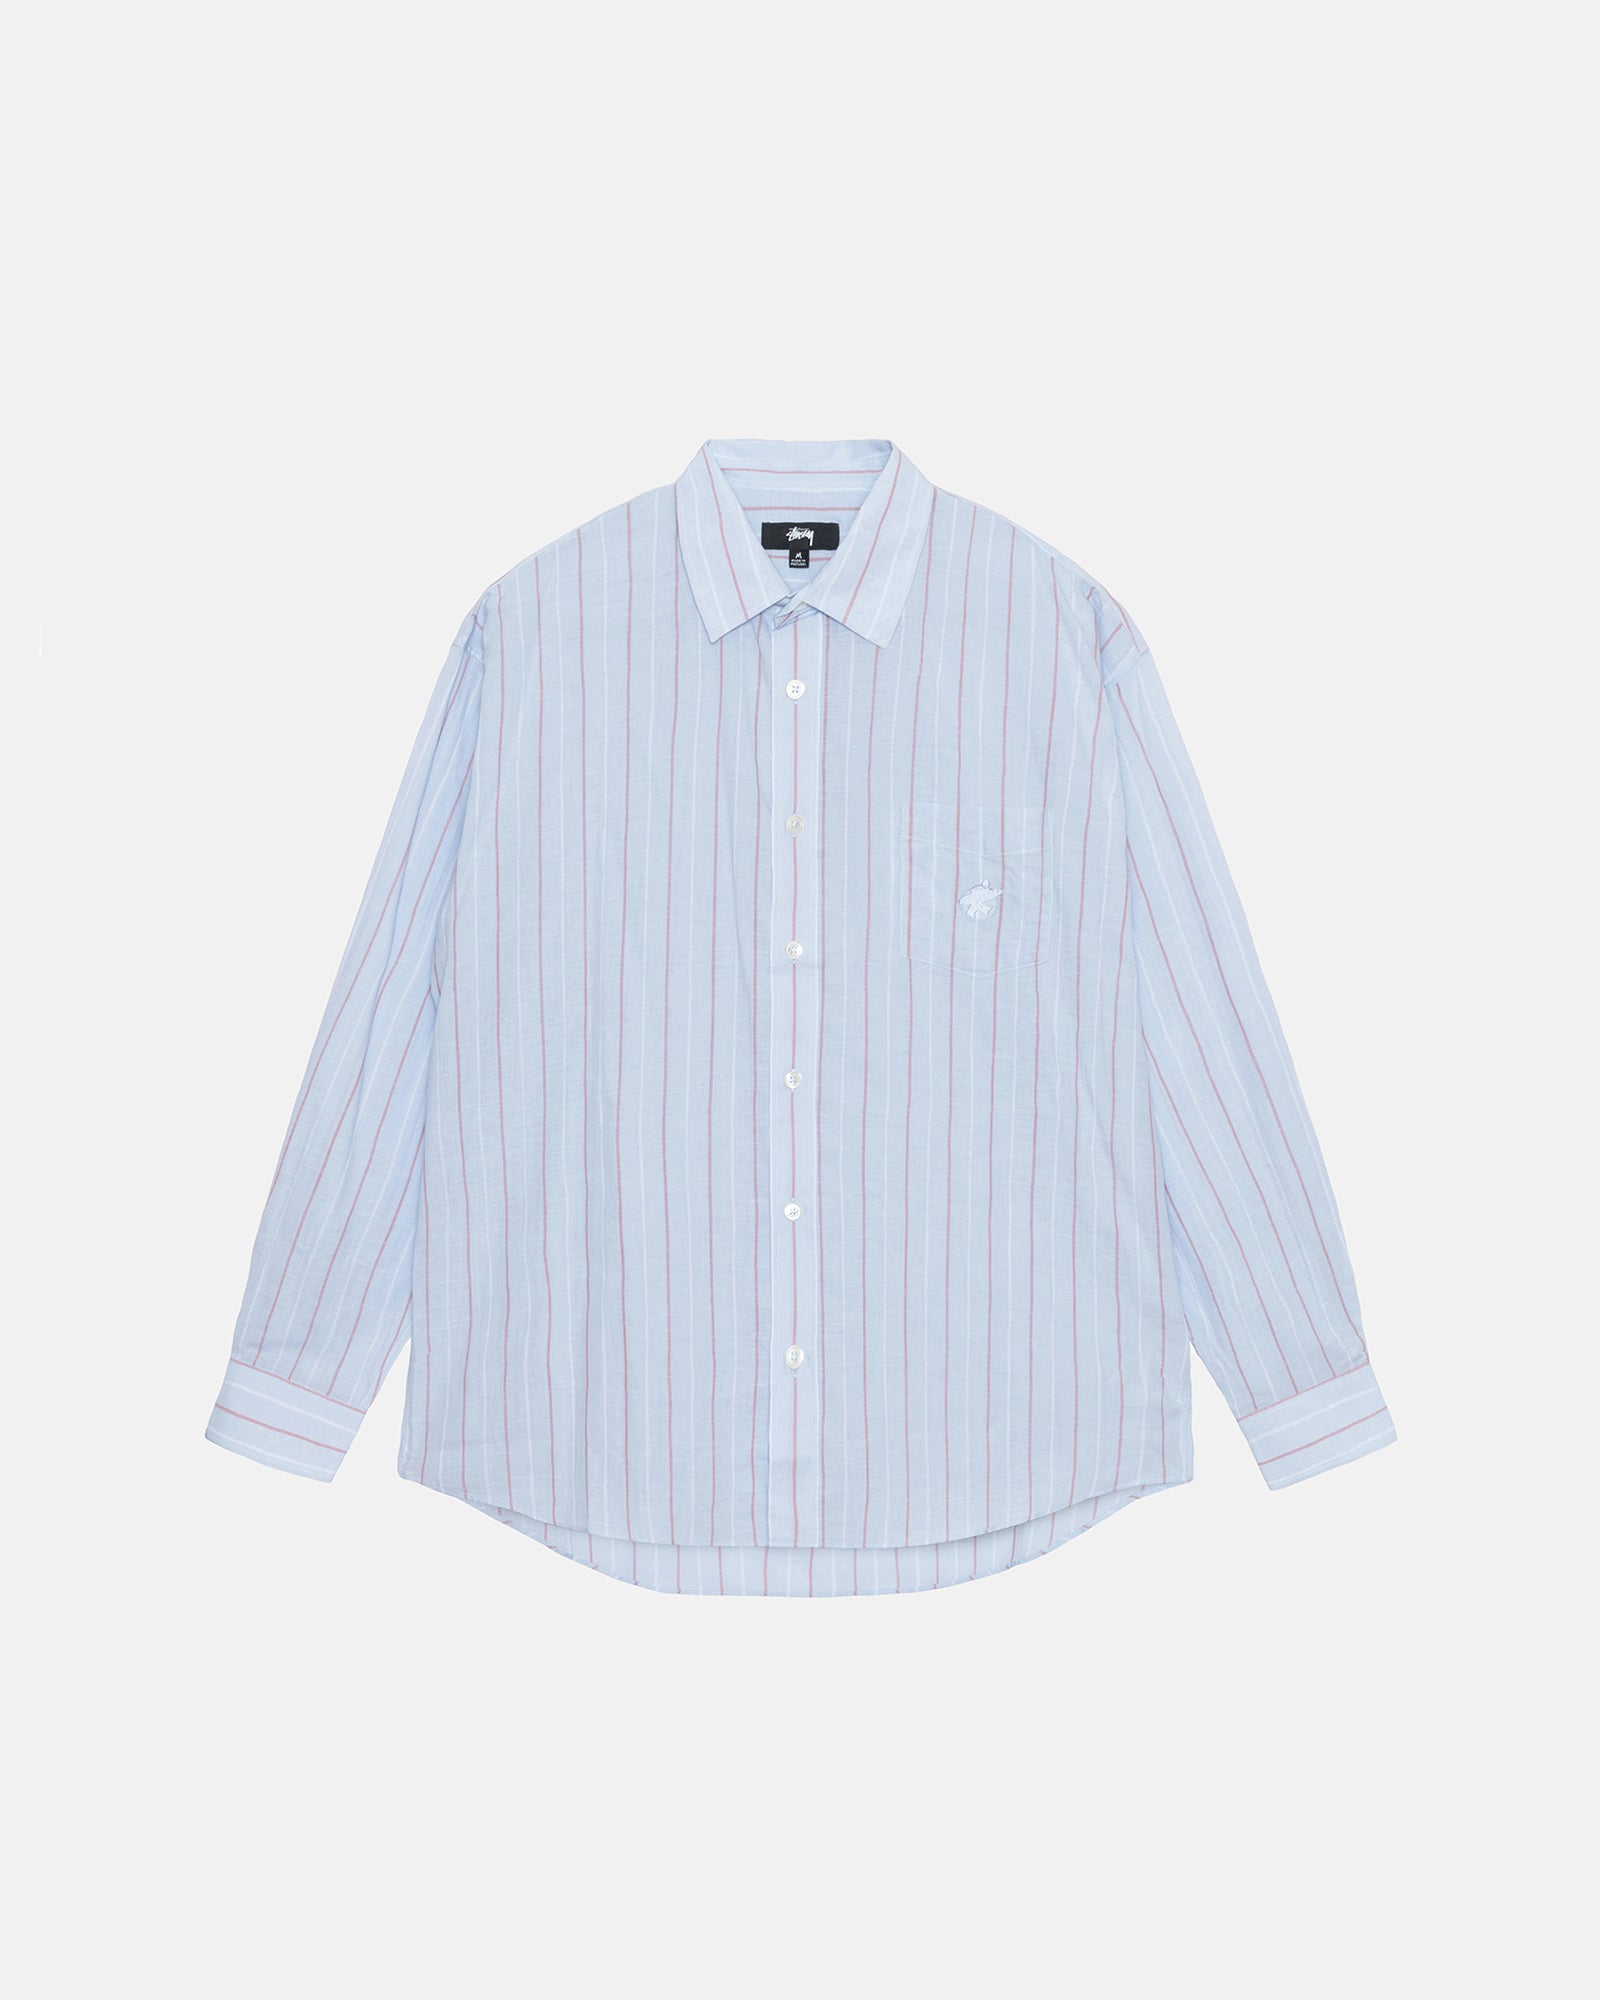 Stüssy Classic Shirt Striped Cotton Linen Light Blue Tops